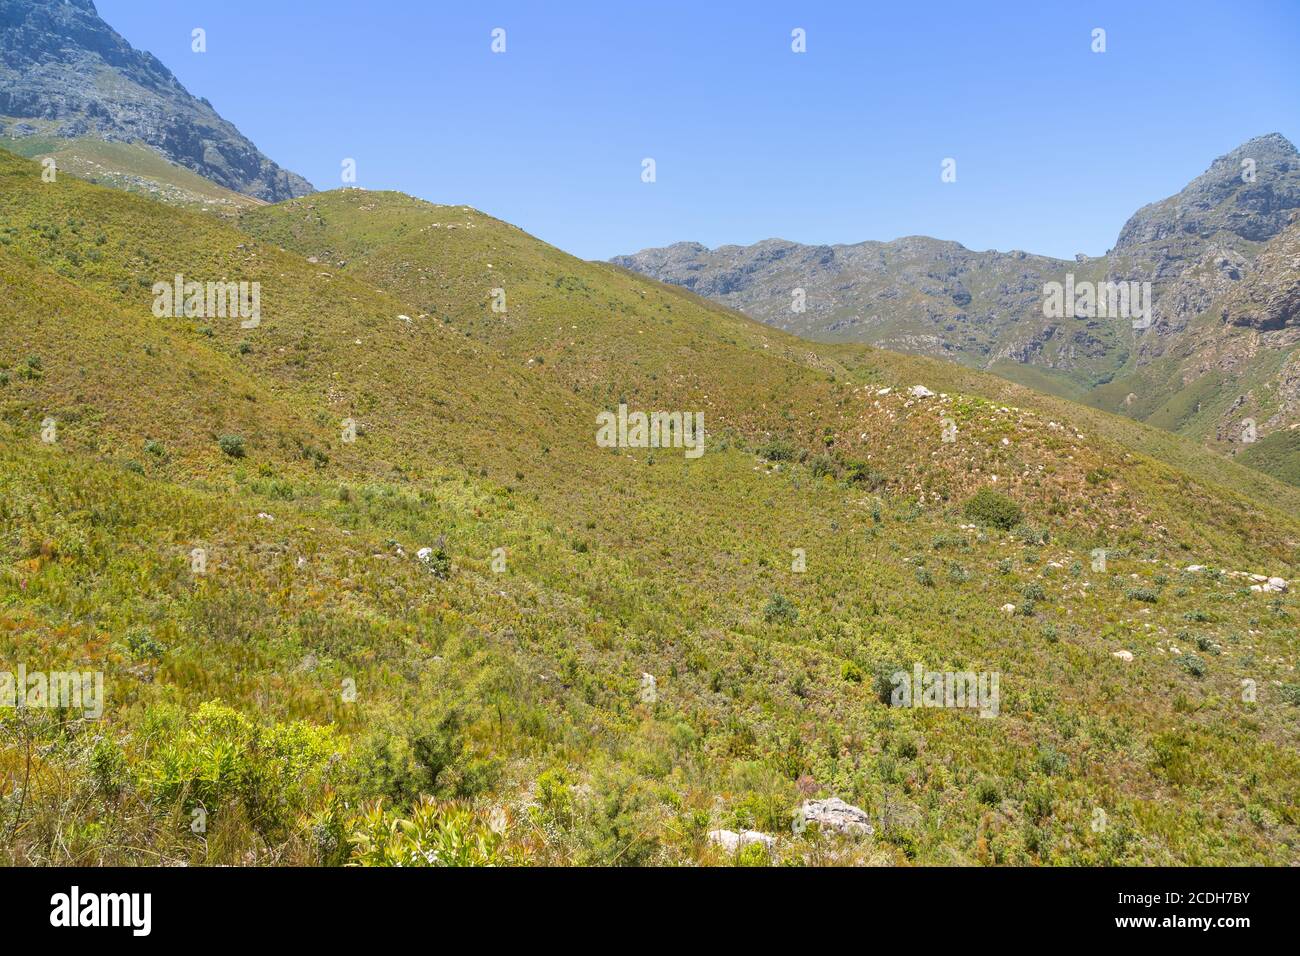 Paysage dans la réserve naturelle de Jonkershoek près de Stellenbosch, Cap occidental, Afrique du Sud Banque D'Images